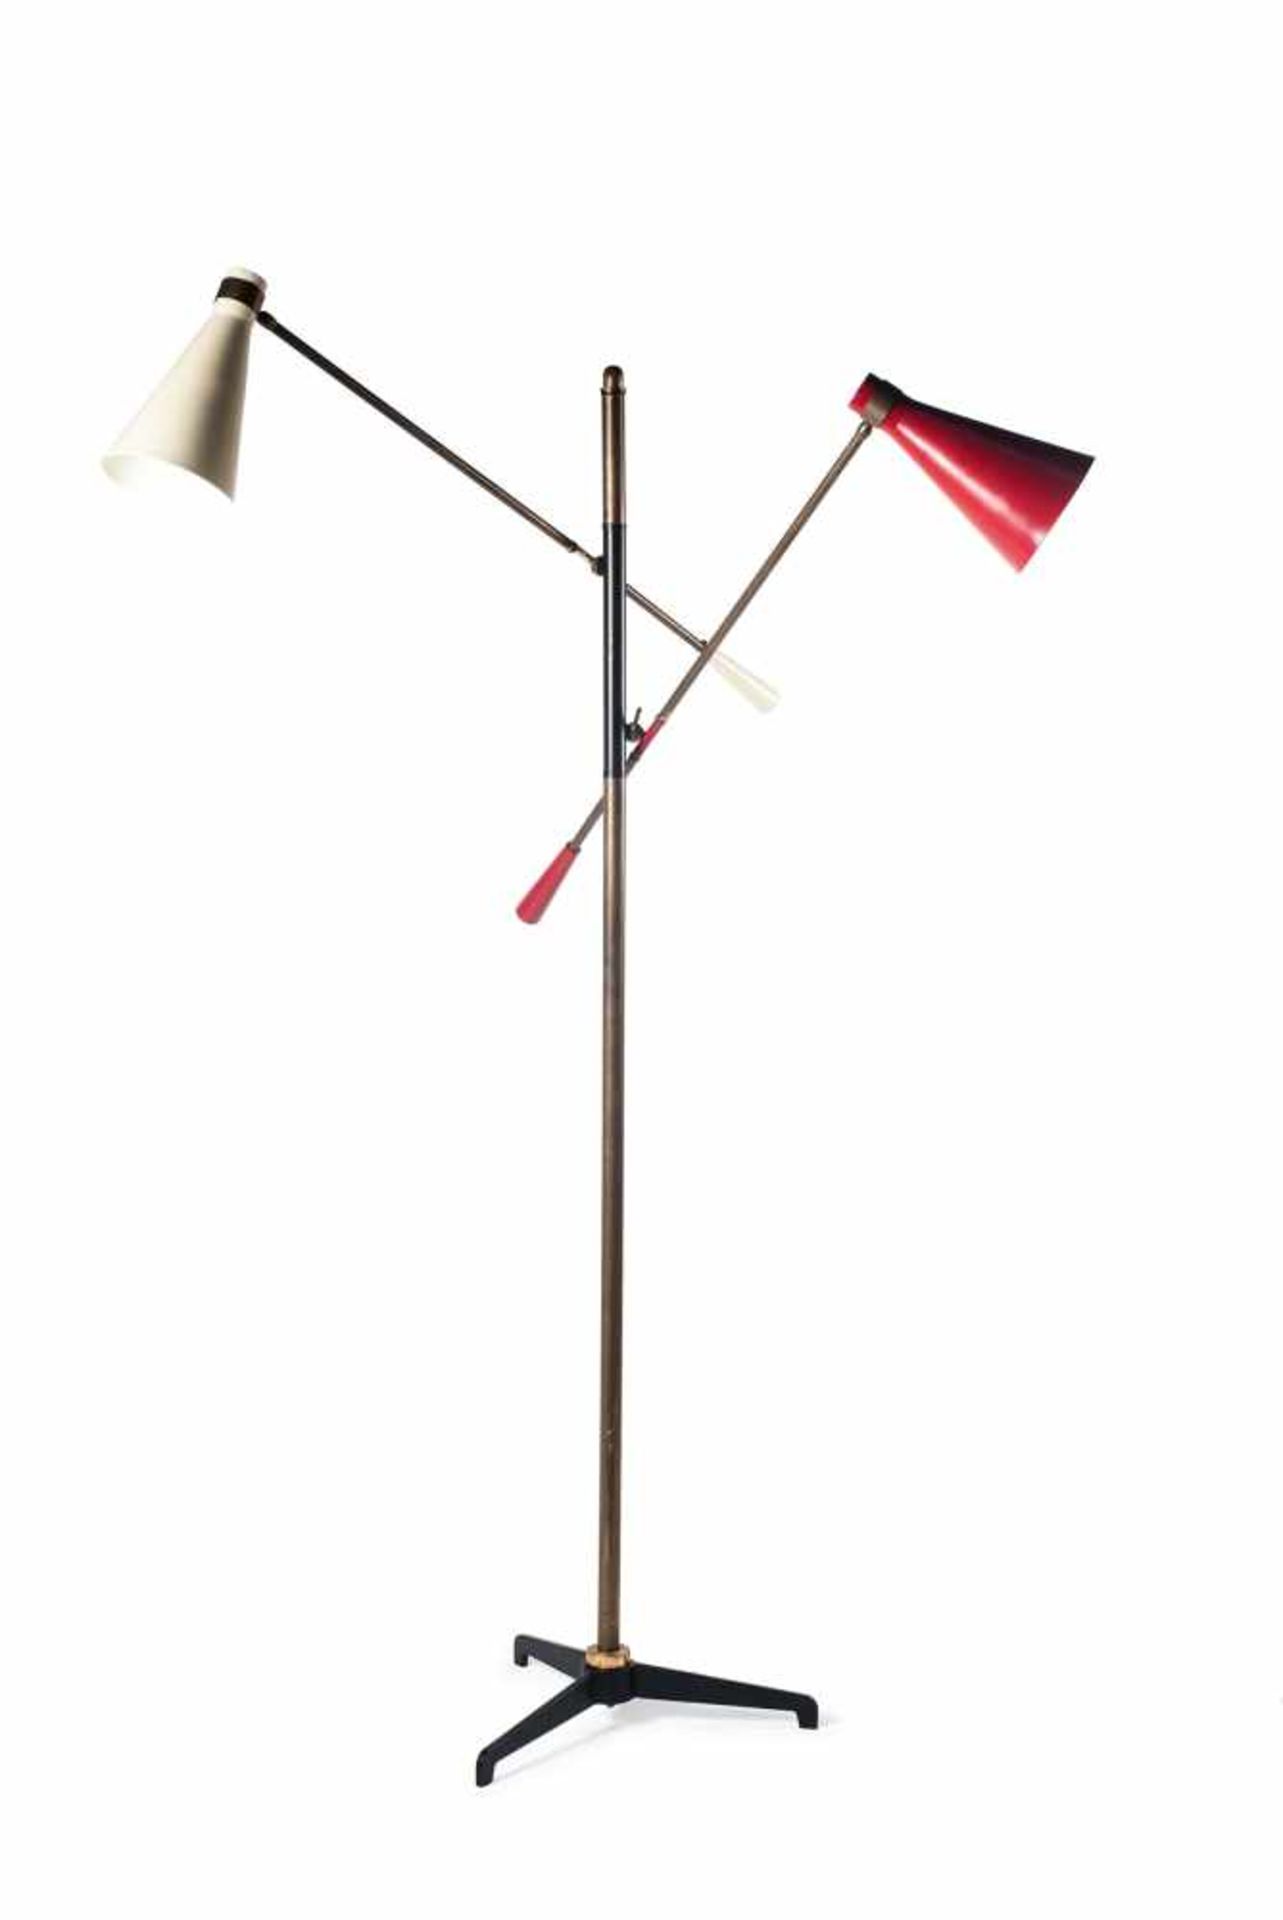 Stehleuchte, um 1955 Italien H. 200 cm, Schirme: Dm. 15,5 cm. Metallblech, rot und weiß lackiert,